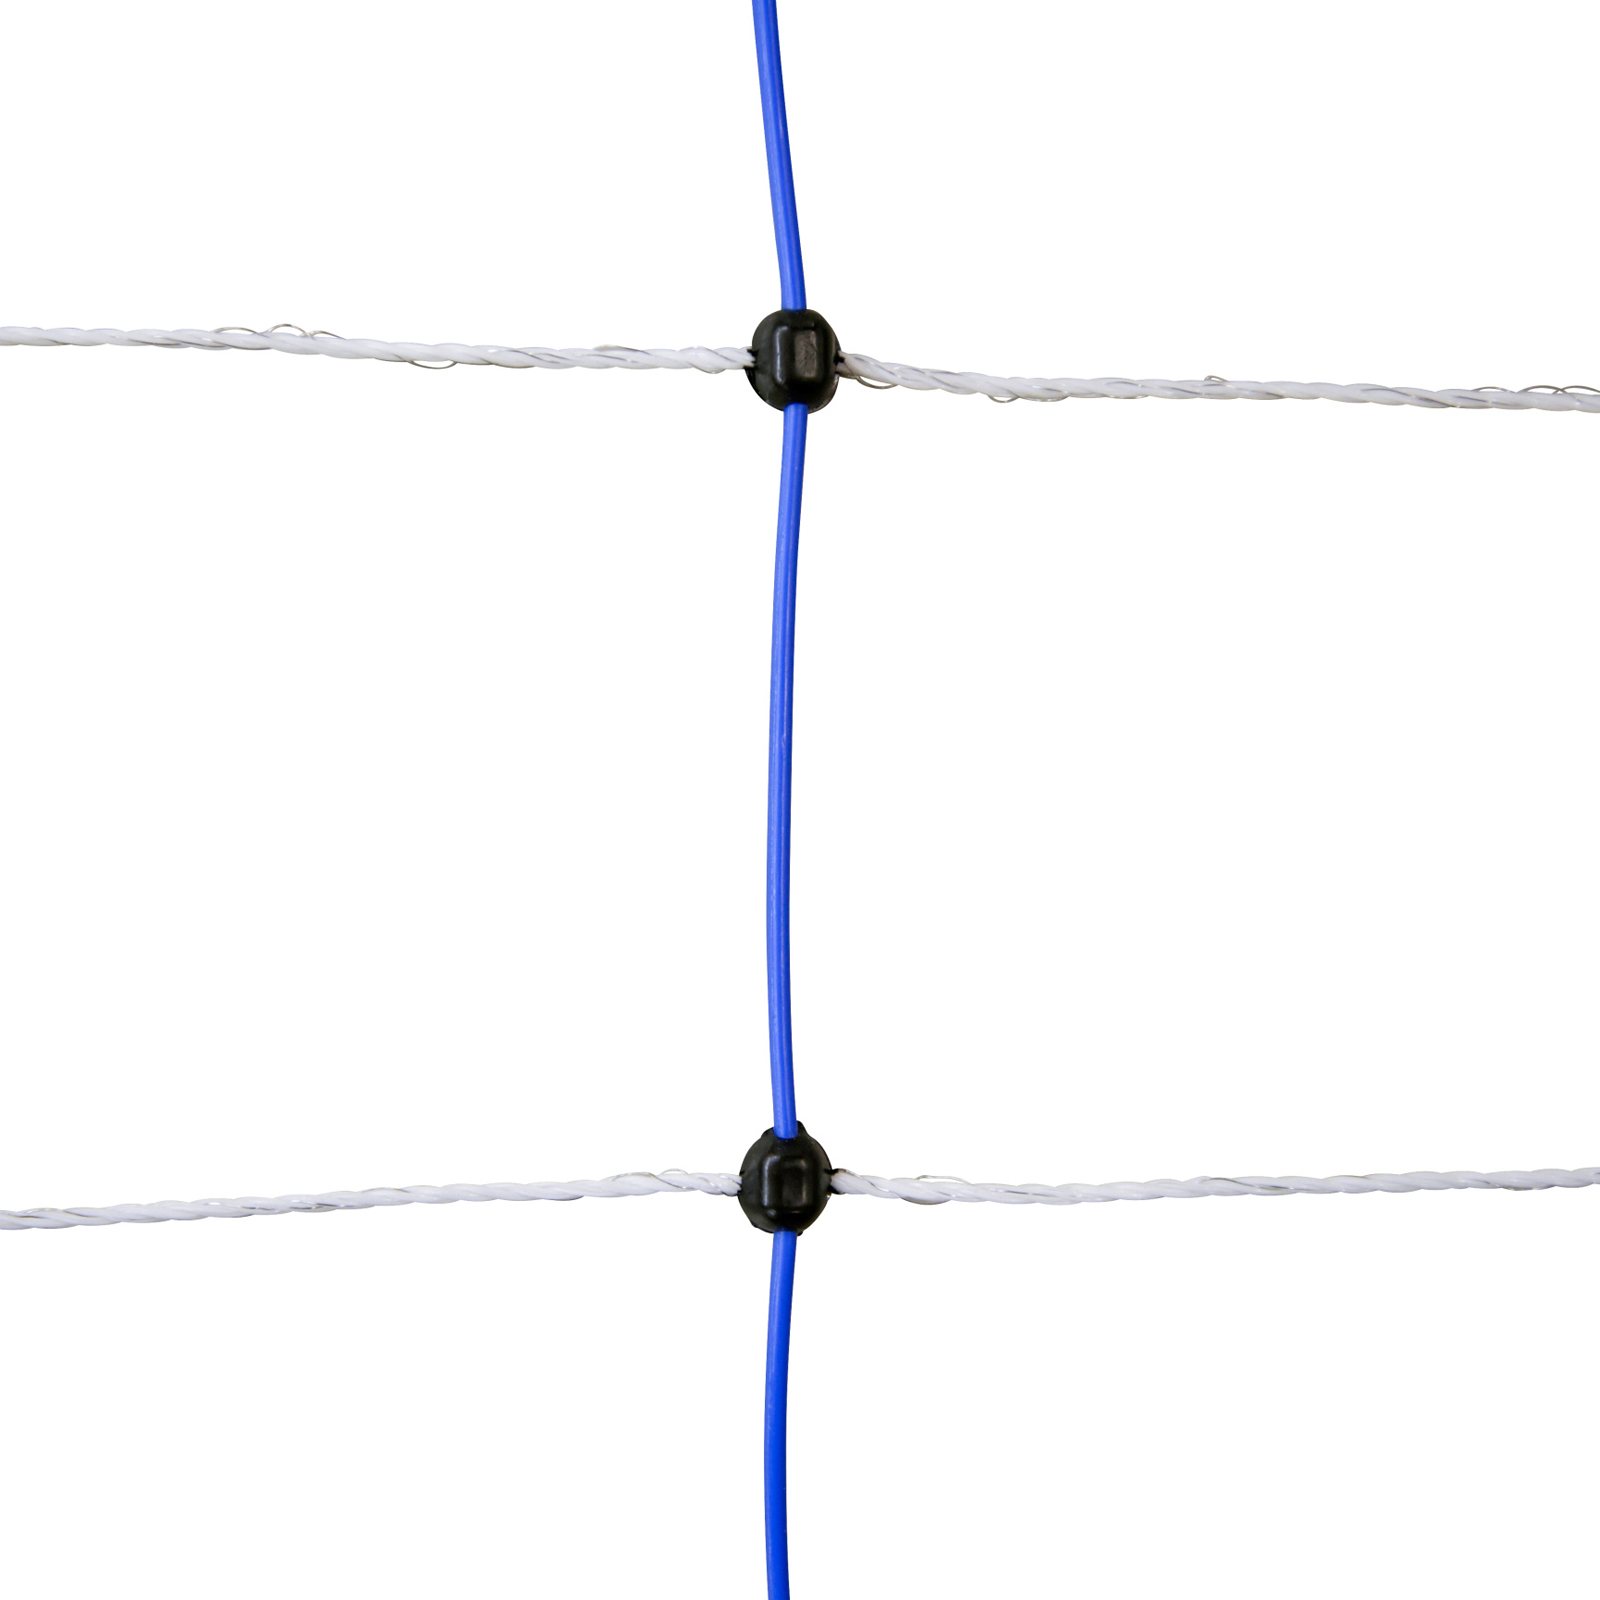 Ako Fårnät TitanNet 145cm x 25m, blå/vit, dubbelspets